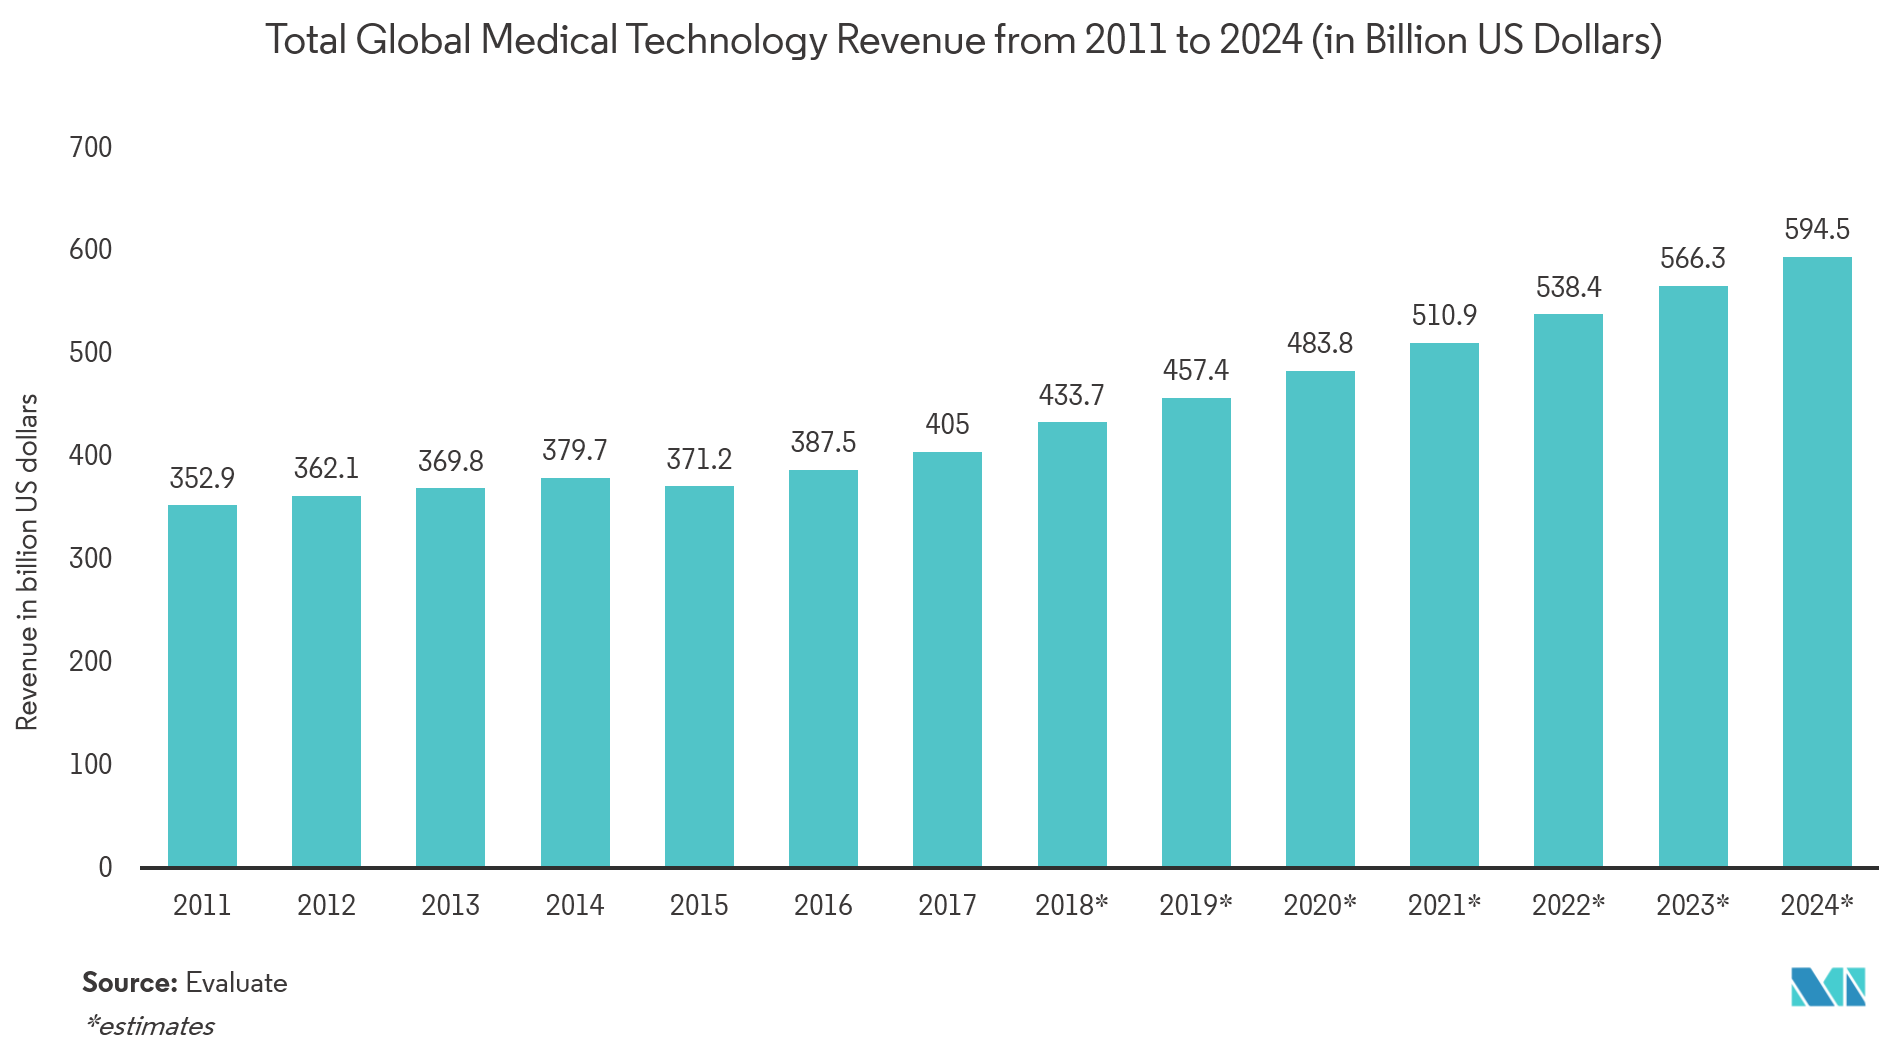 バイオメディカルセンサー市場：2011年から2024年までの世界の医療技術総収入（単位：億米ドル）